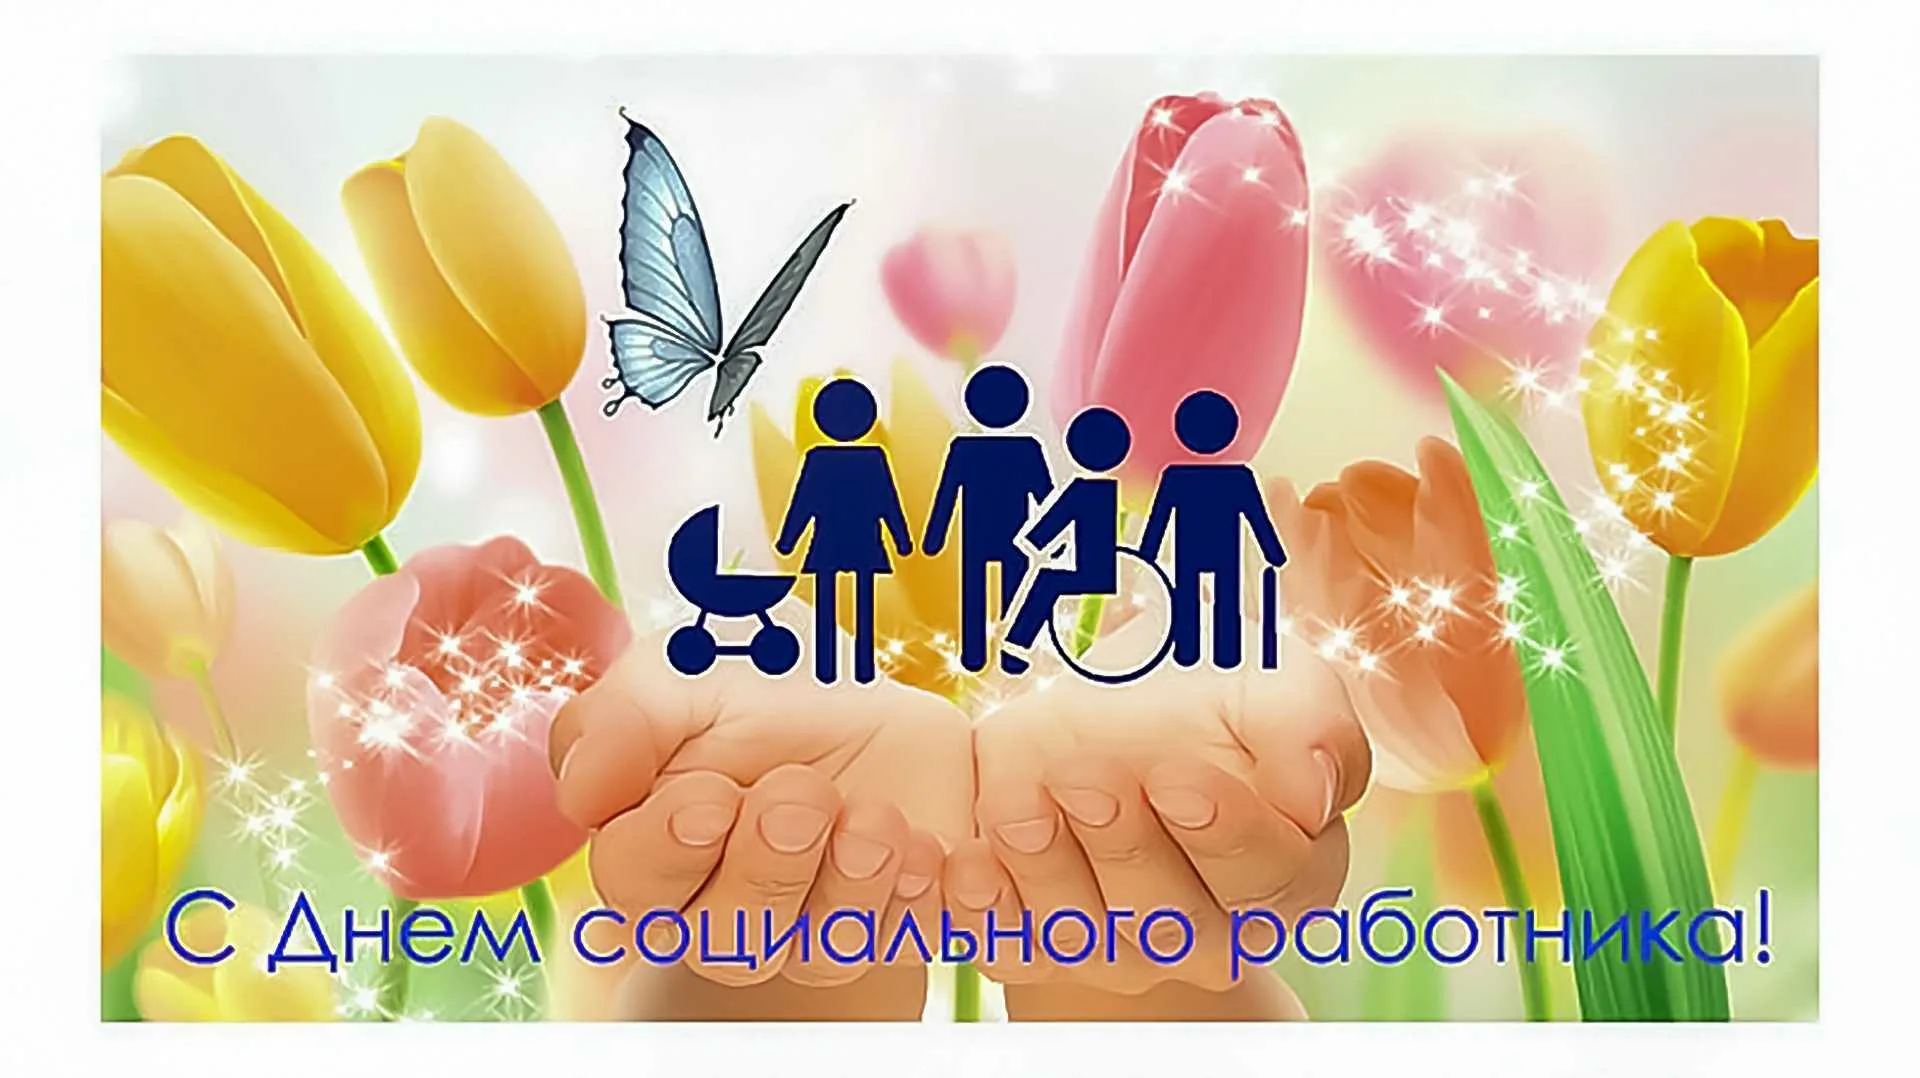 Фото День работника социальной сферы Украины #69